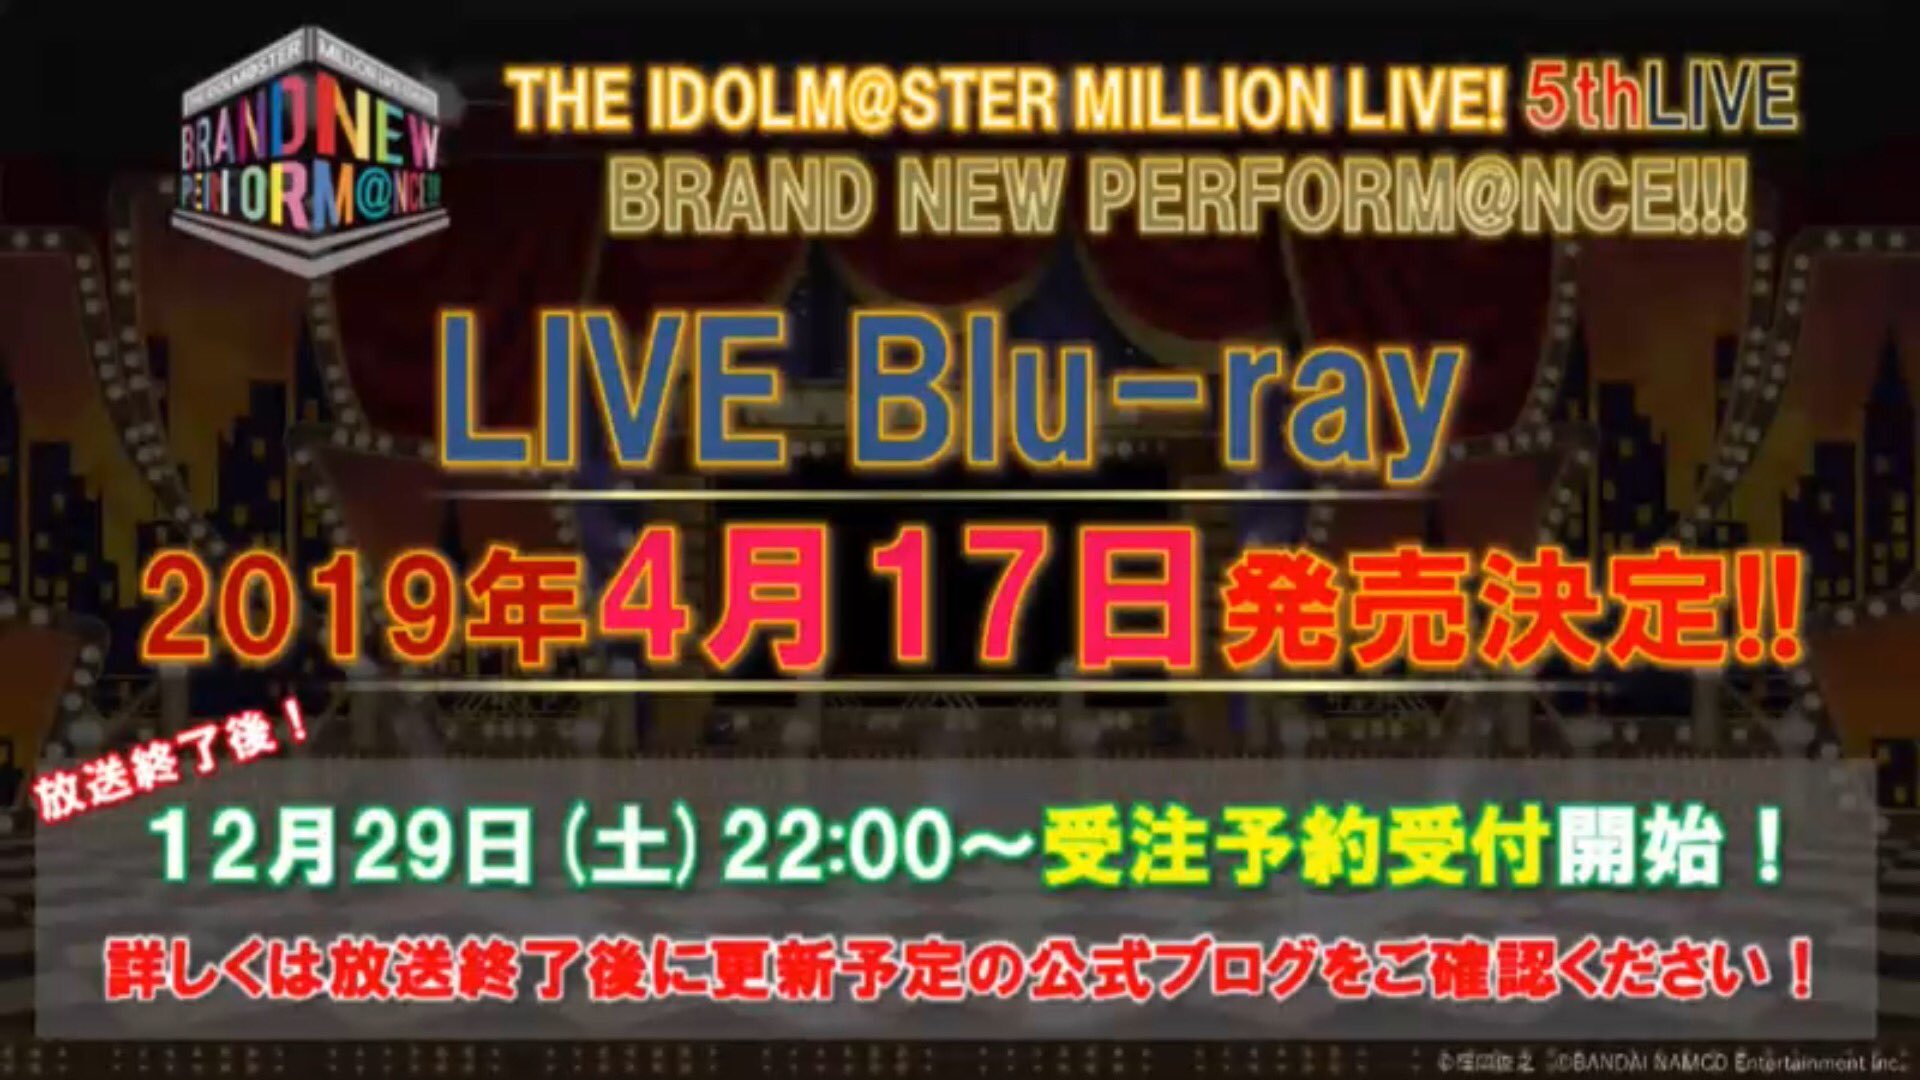 ミリシタeng V Twitter The Blue Ray Release Of The 5th Live Brand New Performance Has Also Been Announced For April 17th 19 Preorders Are Now Available Up On Asobistore If You Re Interested T Co Bqff1lykwc